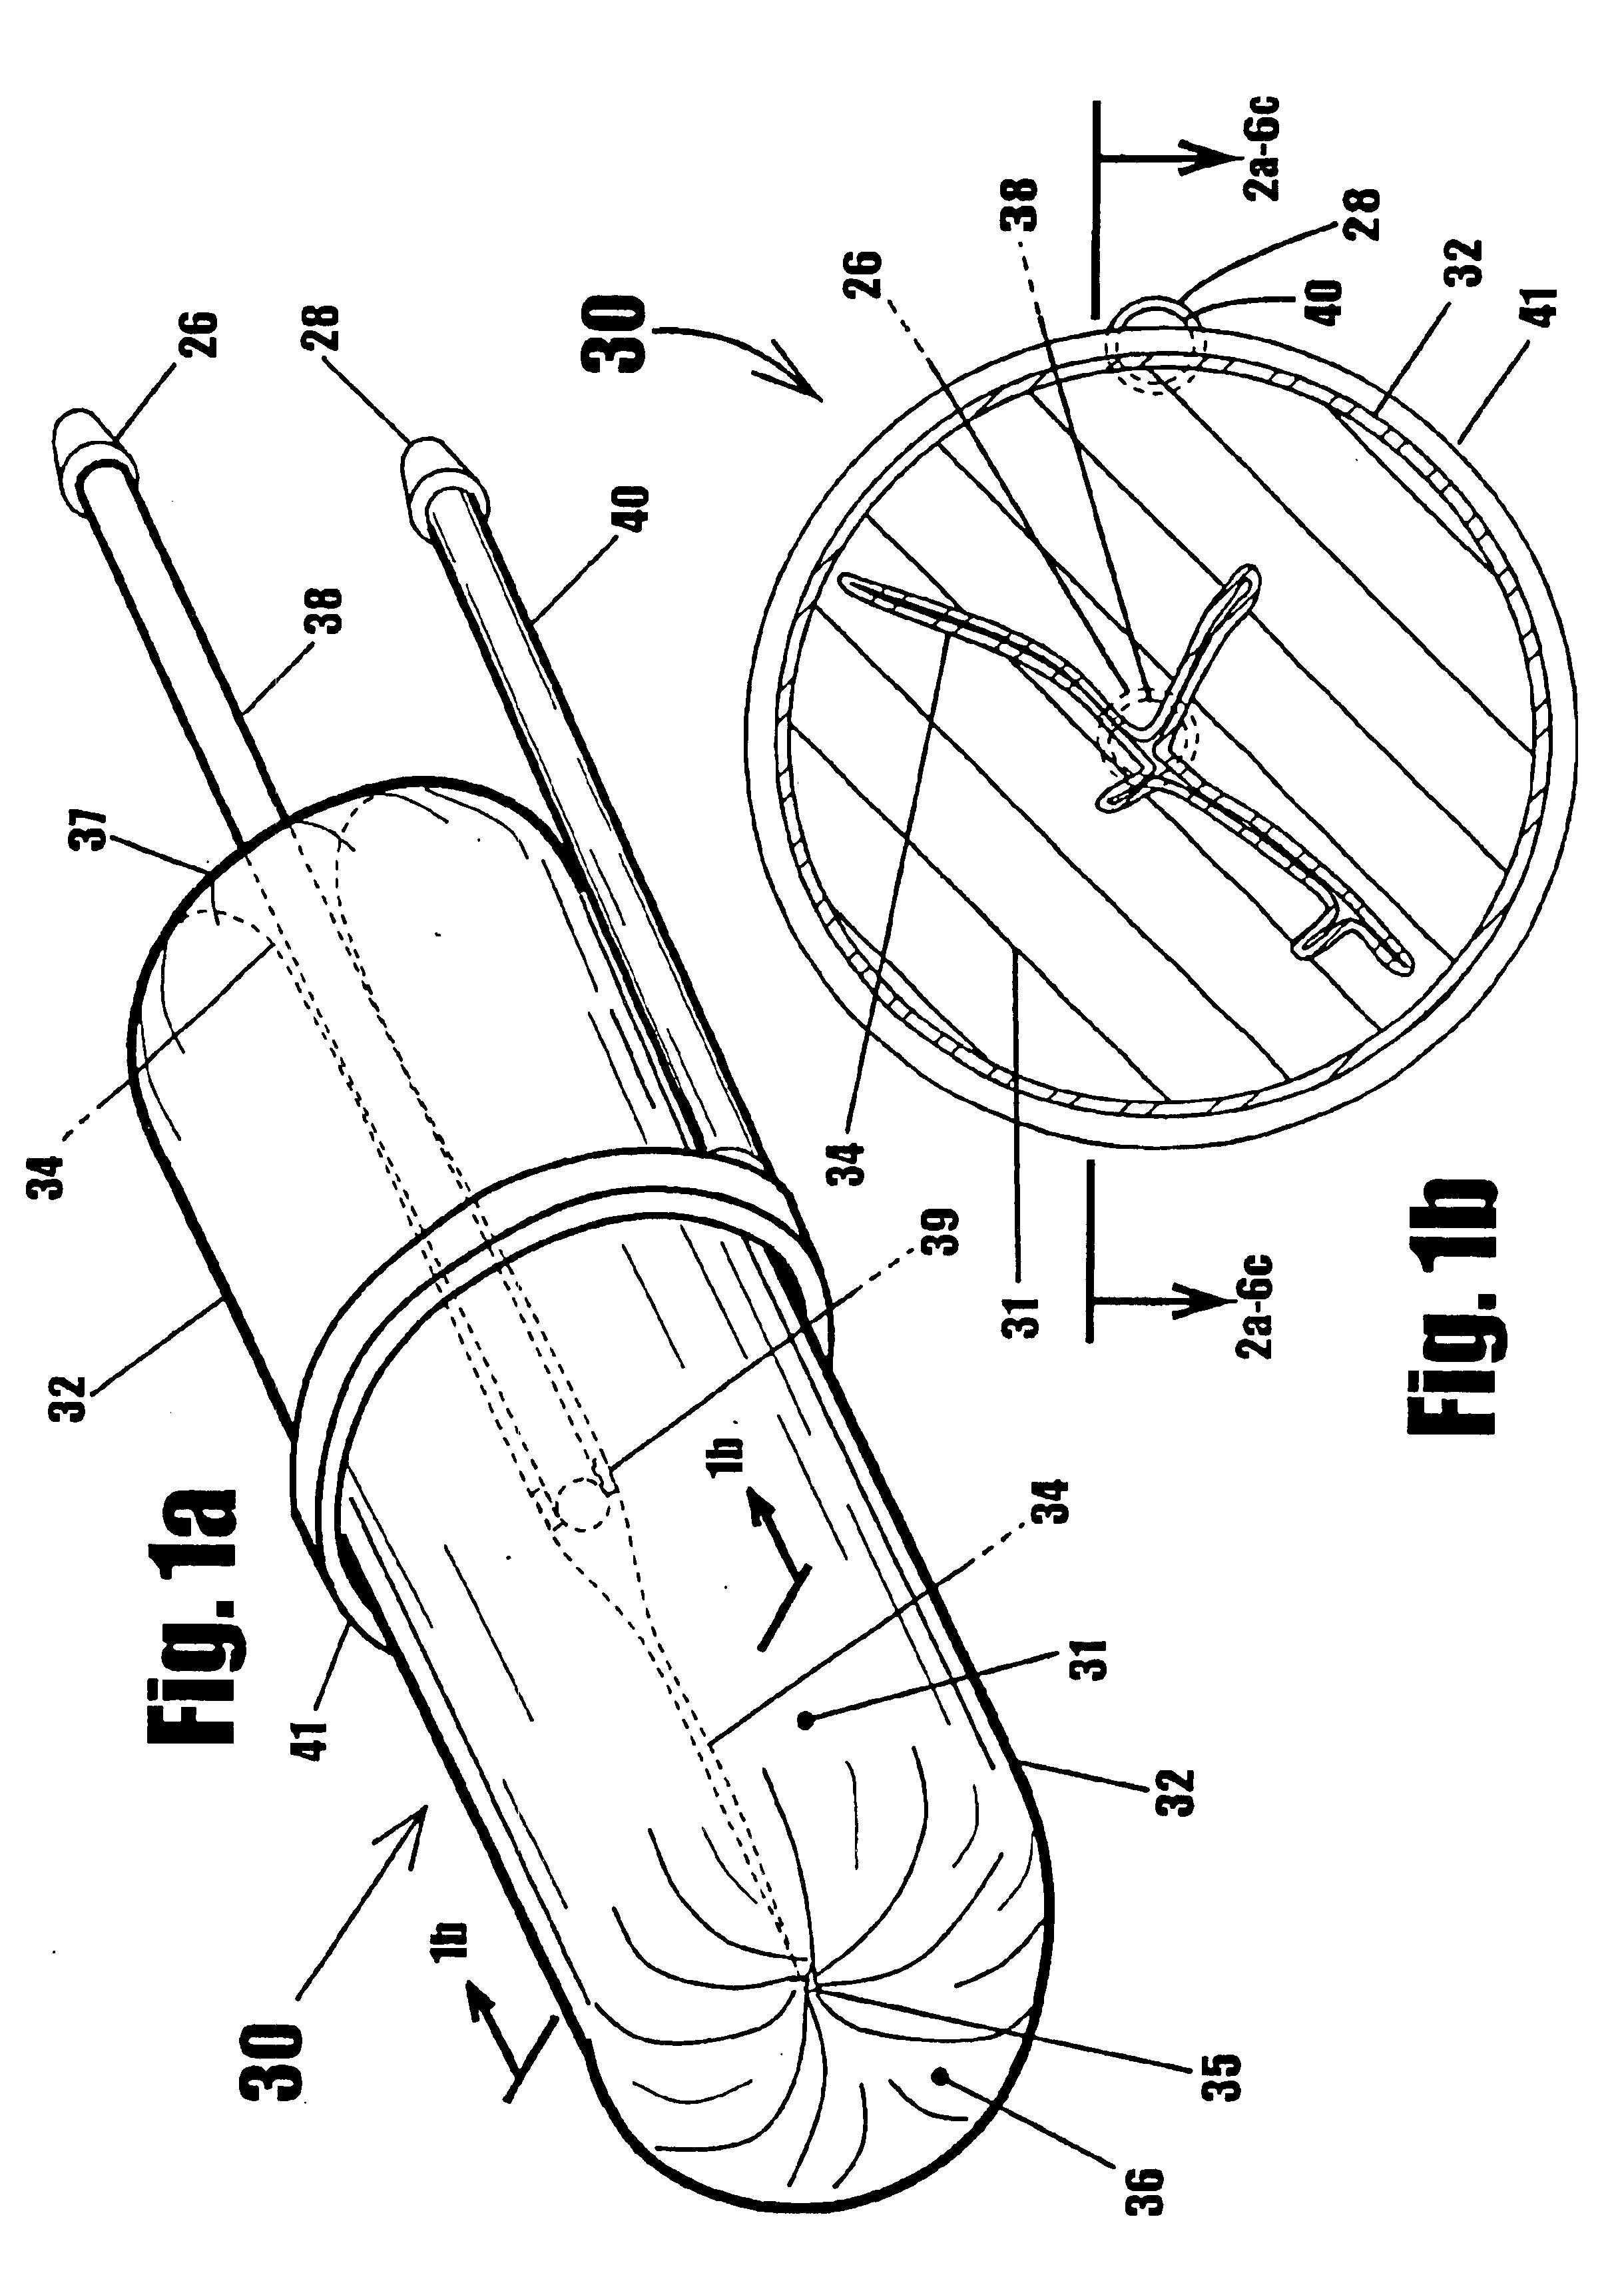 Torus-shaped mechanical gripper